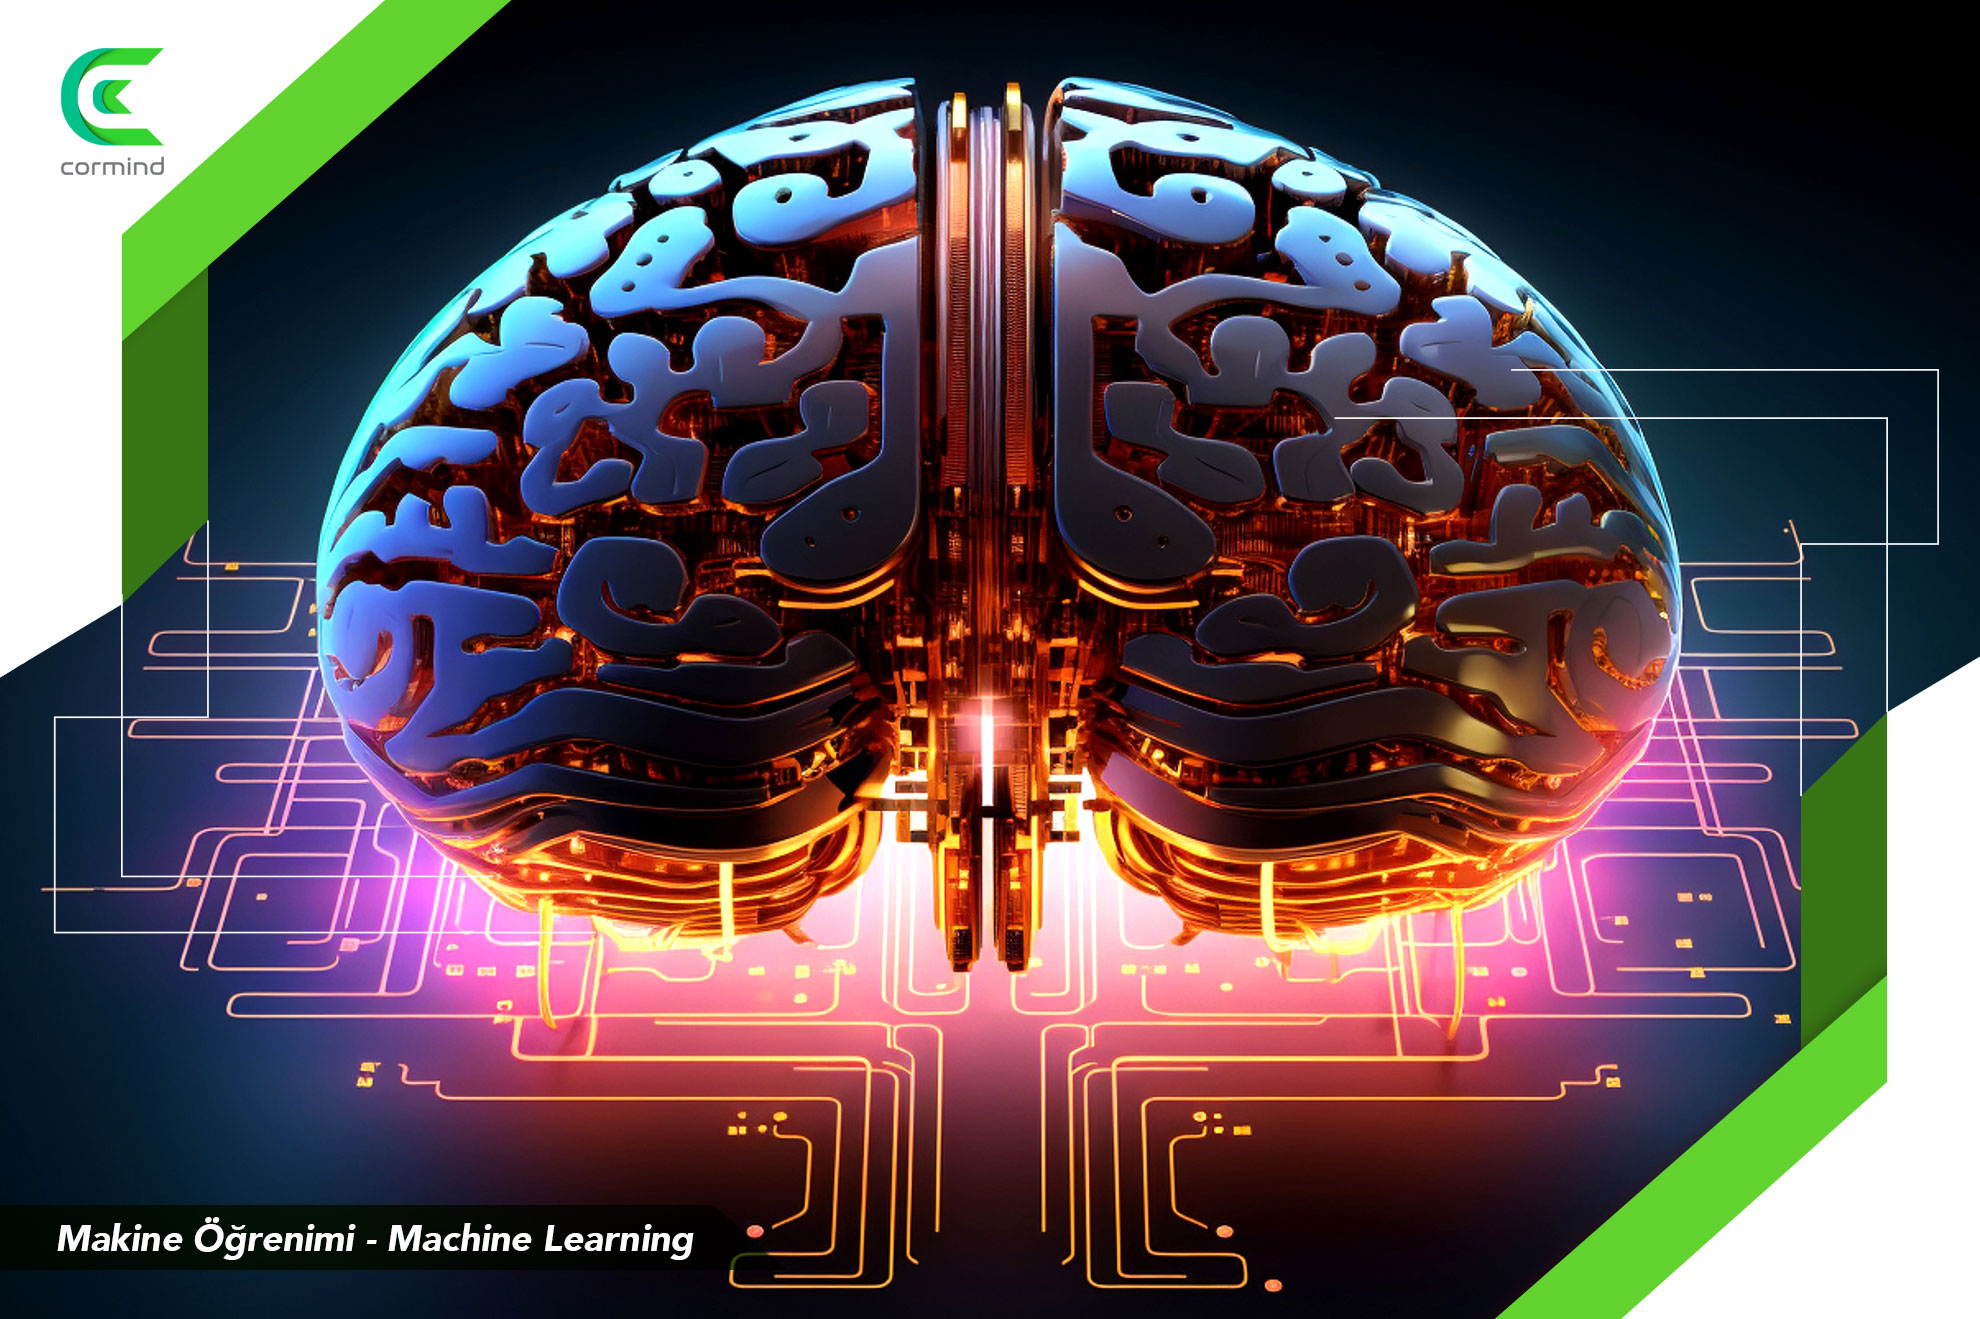 makine öğrenimi, makine öğrenimi nedir, Machine Learning, makina öğrenimi nasıl çalışır. Türkçe makine öğrenimi, makine ogrenimi makale, makine öğrenmesi,